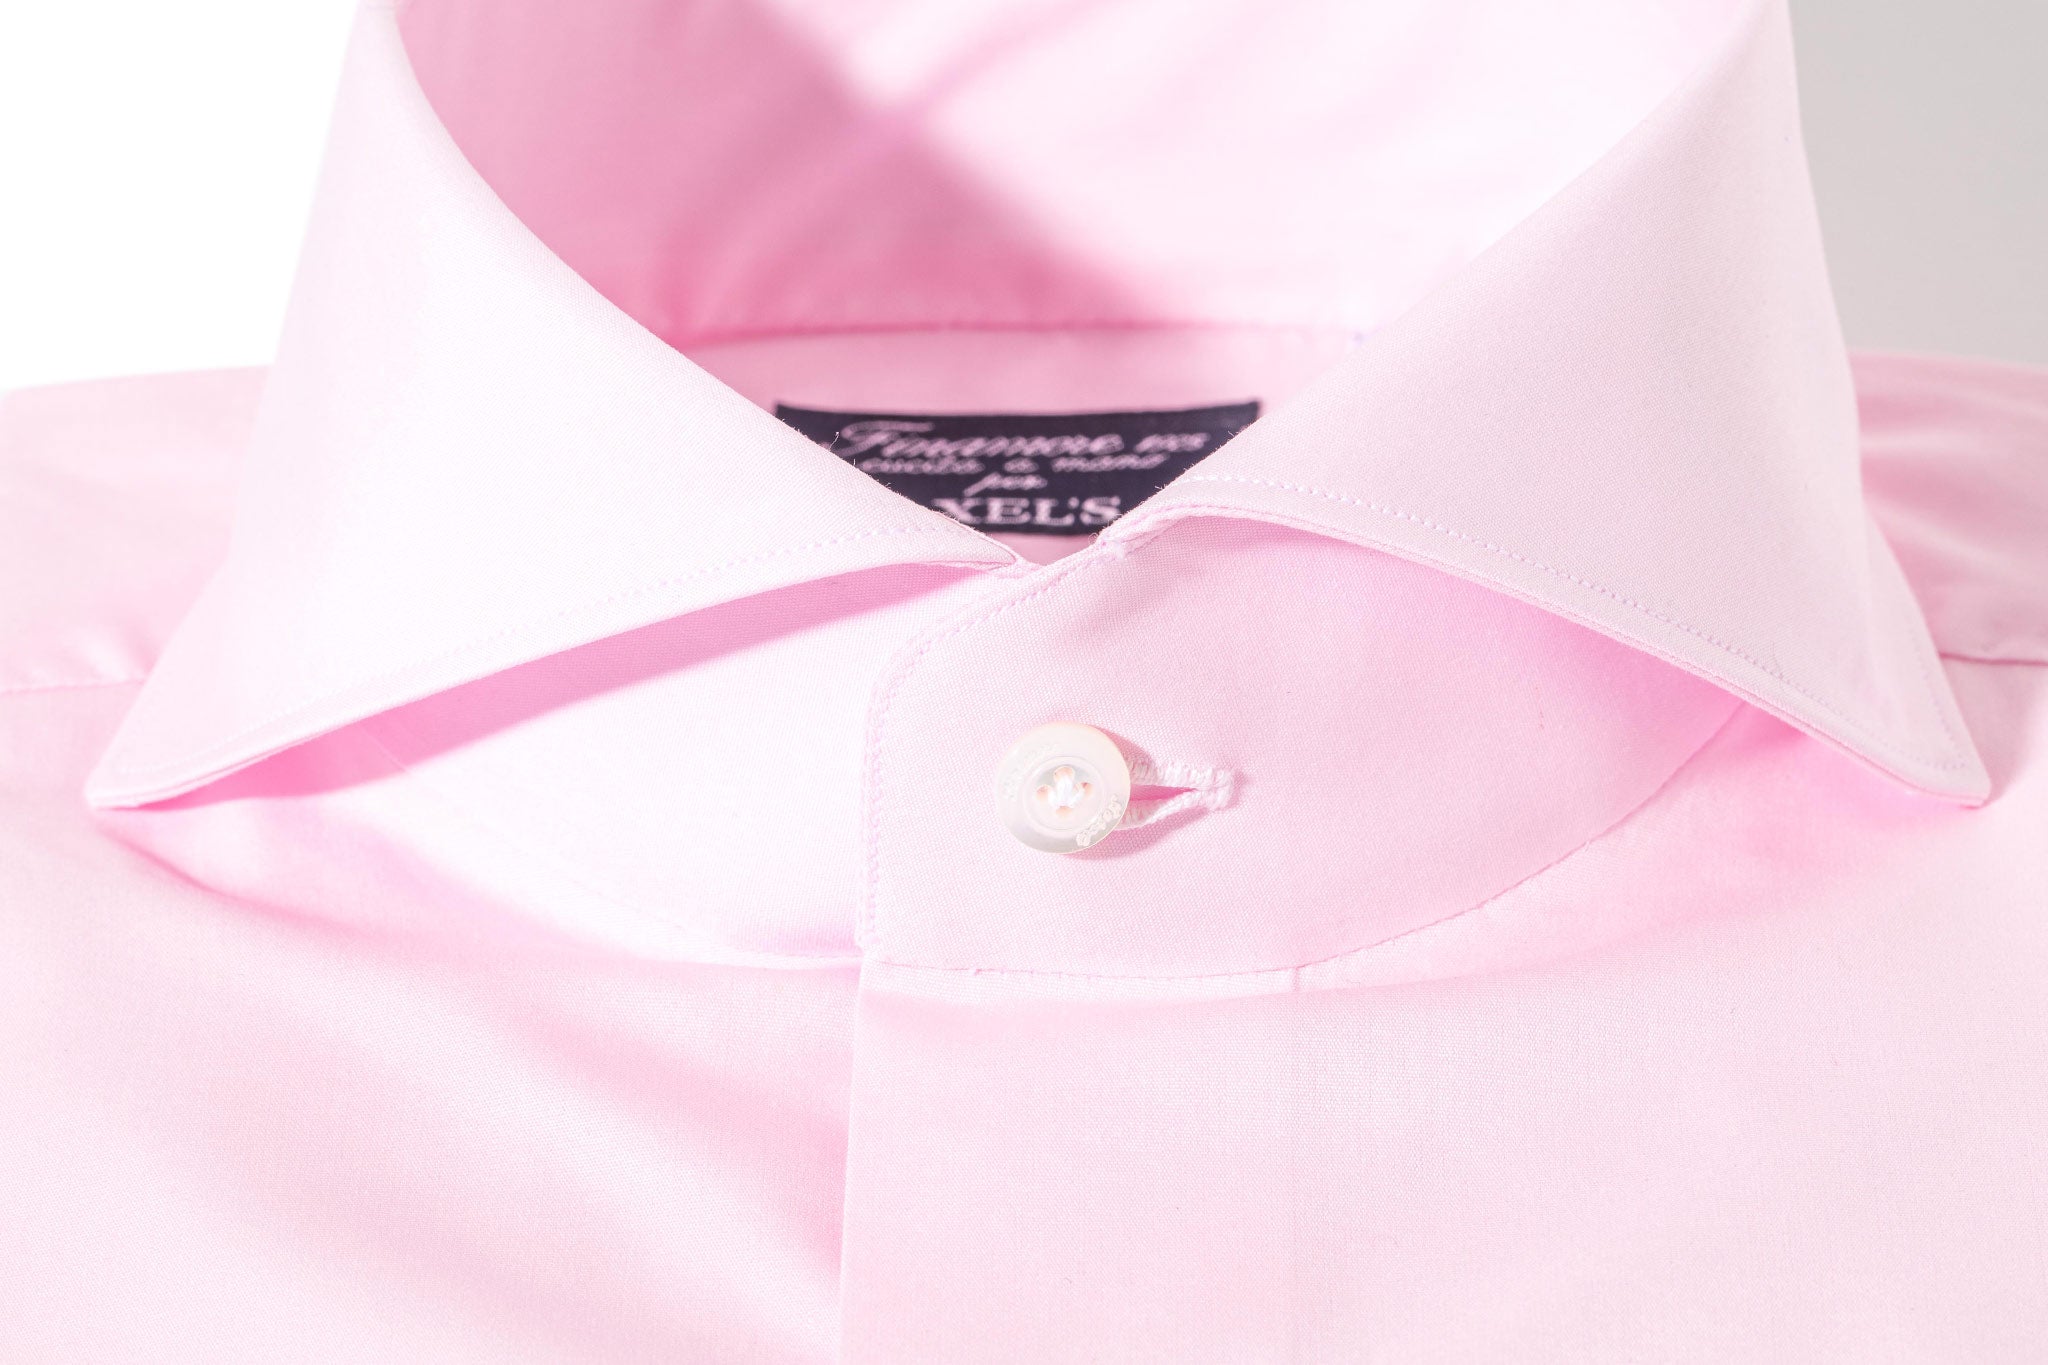 Milan Dress Shirt in Pink | Mens - Shirts | Finamore Napoli